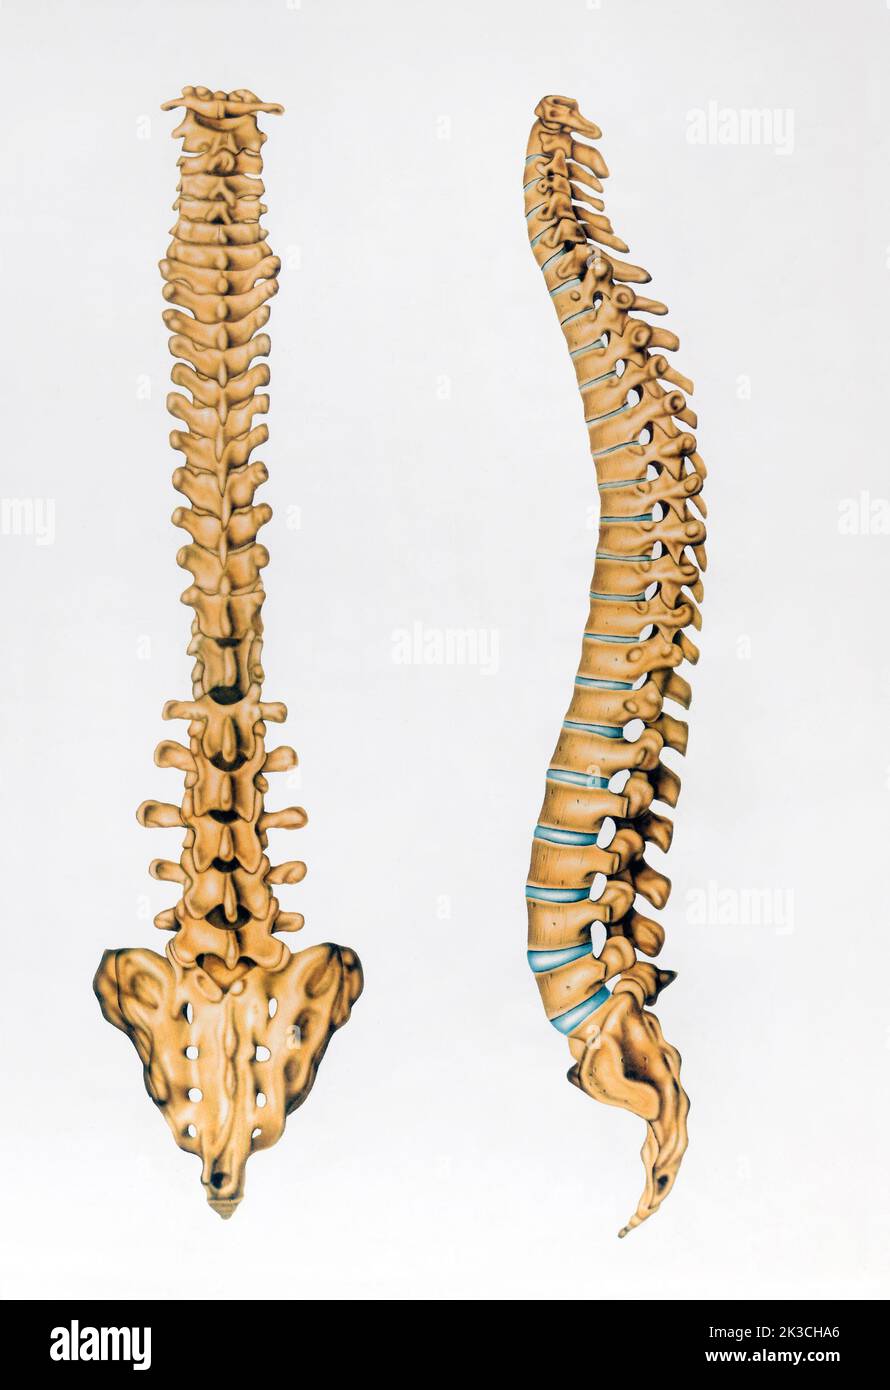 Immagine retro schematica di ossa sane della colonna vertebrale umana raffigurata su sfondo grigio Foto Stock